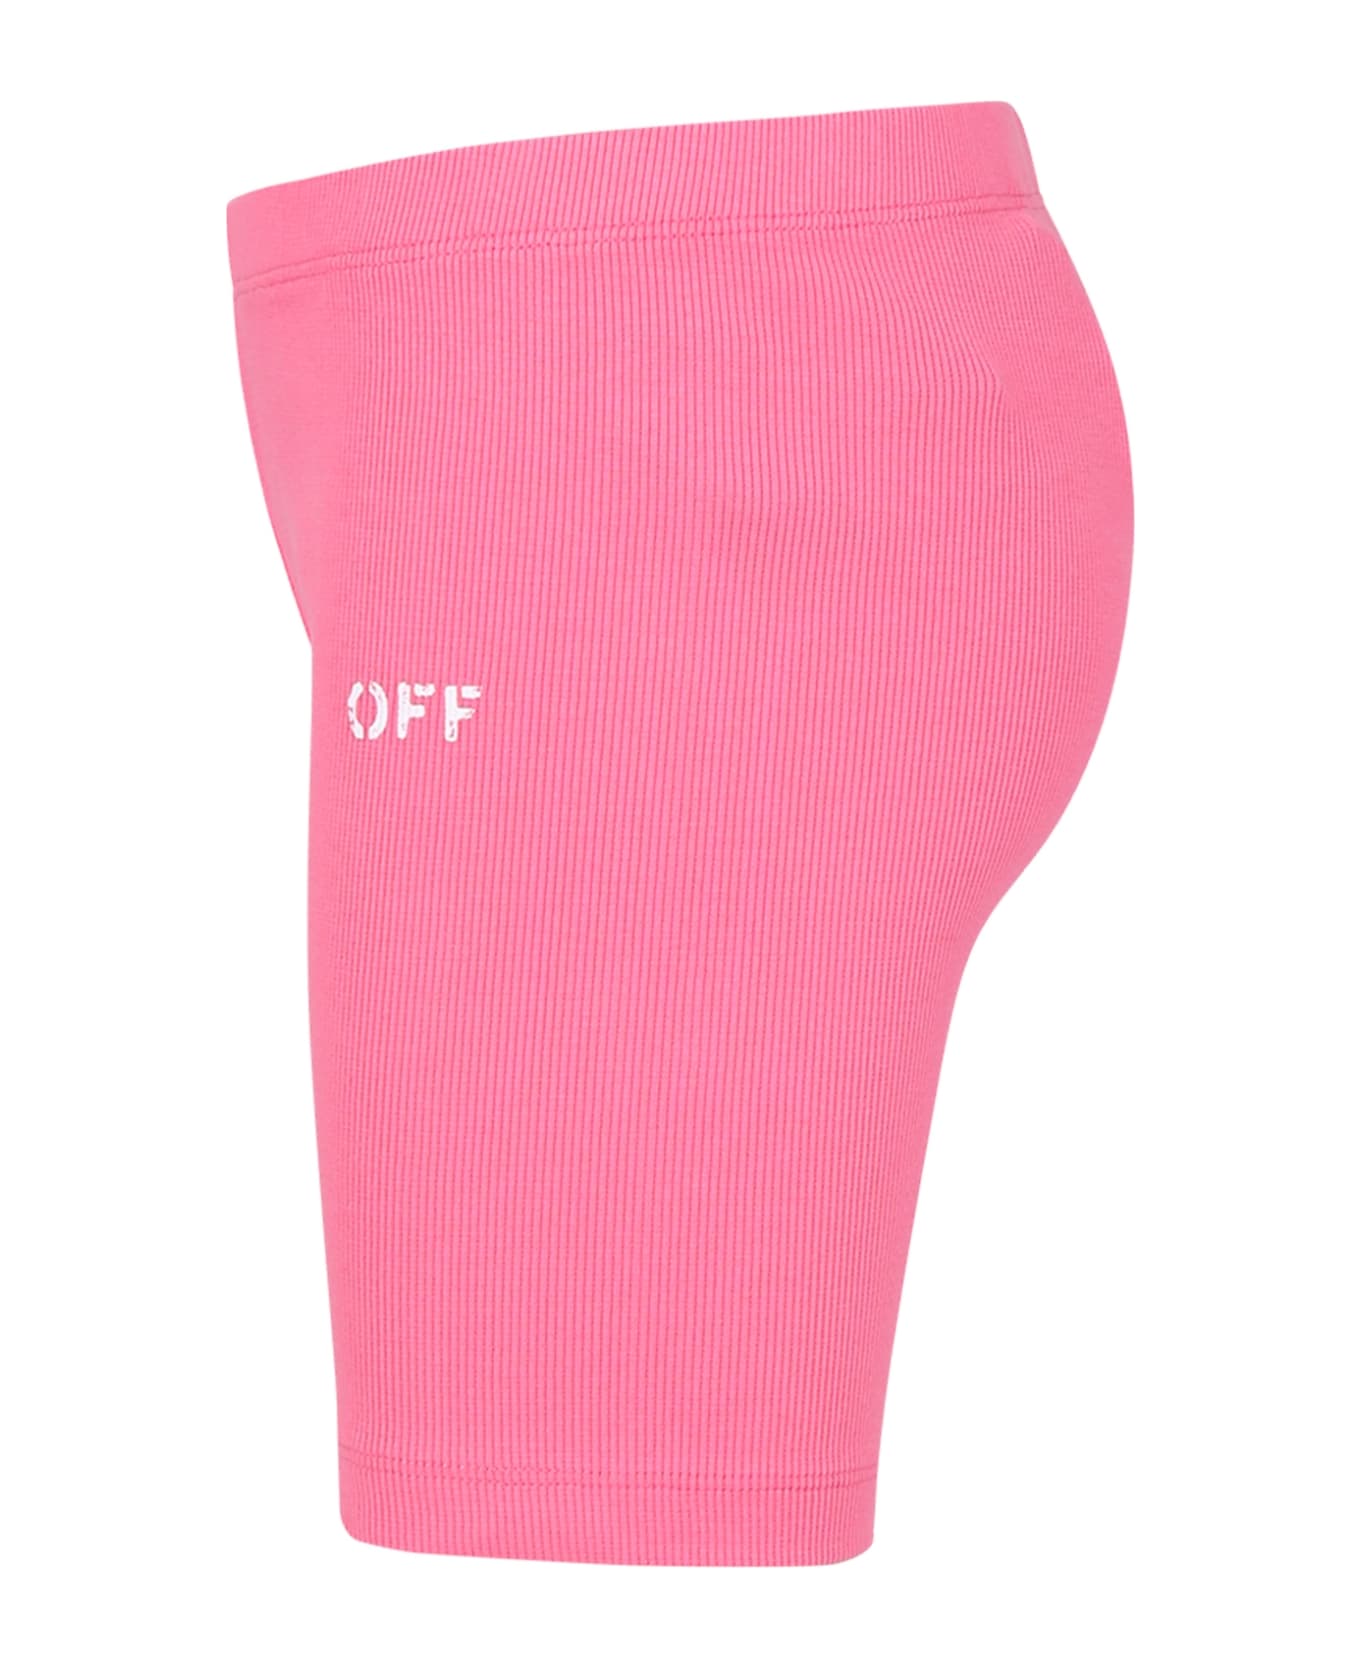 Off-White Fuchsia Shorts For Girl With Logo - Fuchsia